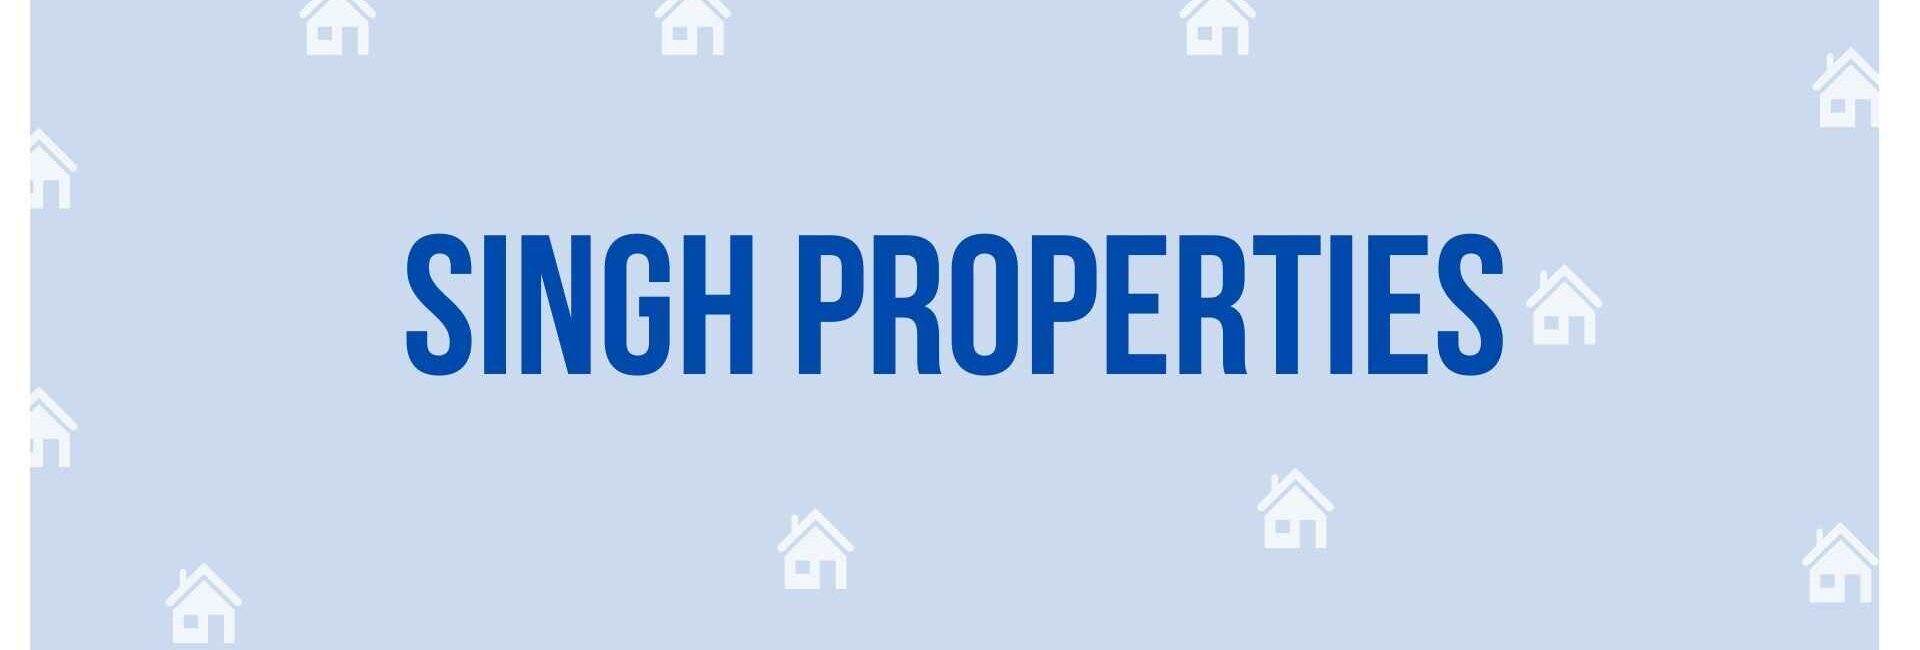 Singh Properties - Property Dealer in Noida